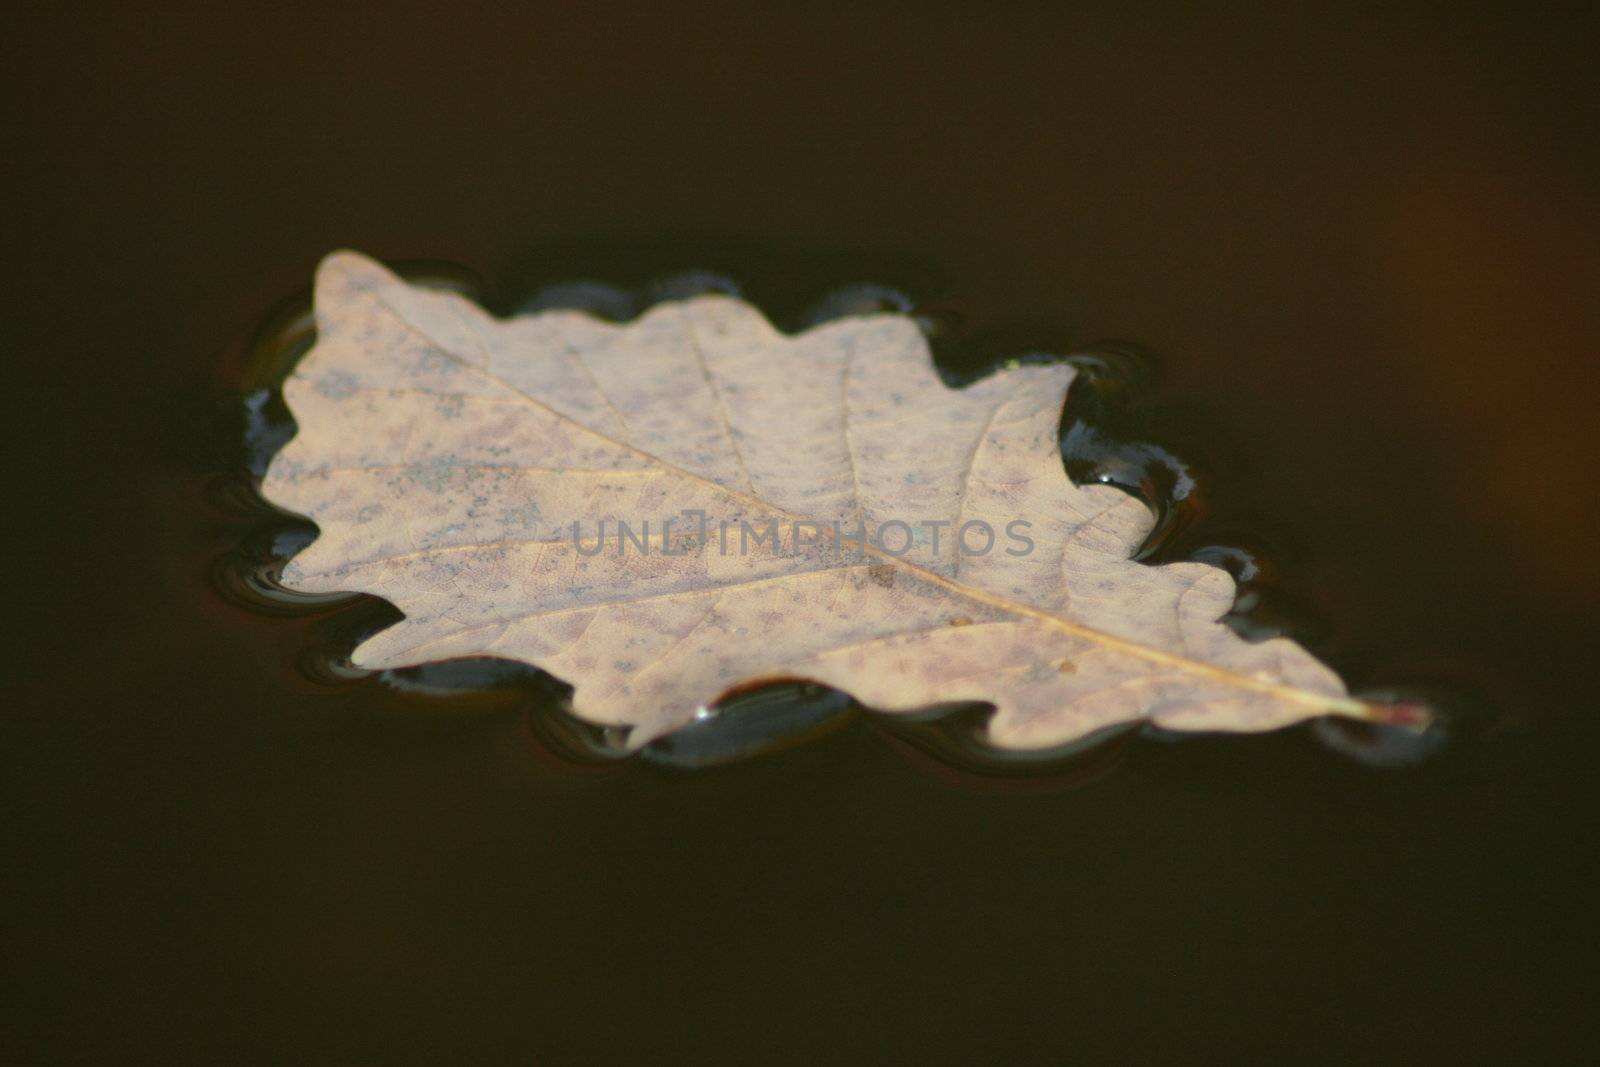 Ein Herbstliches Eichenblatt treibt im Wasser	
an autumnal oak leaf floating in water